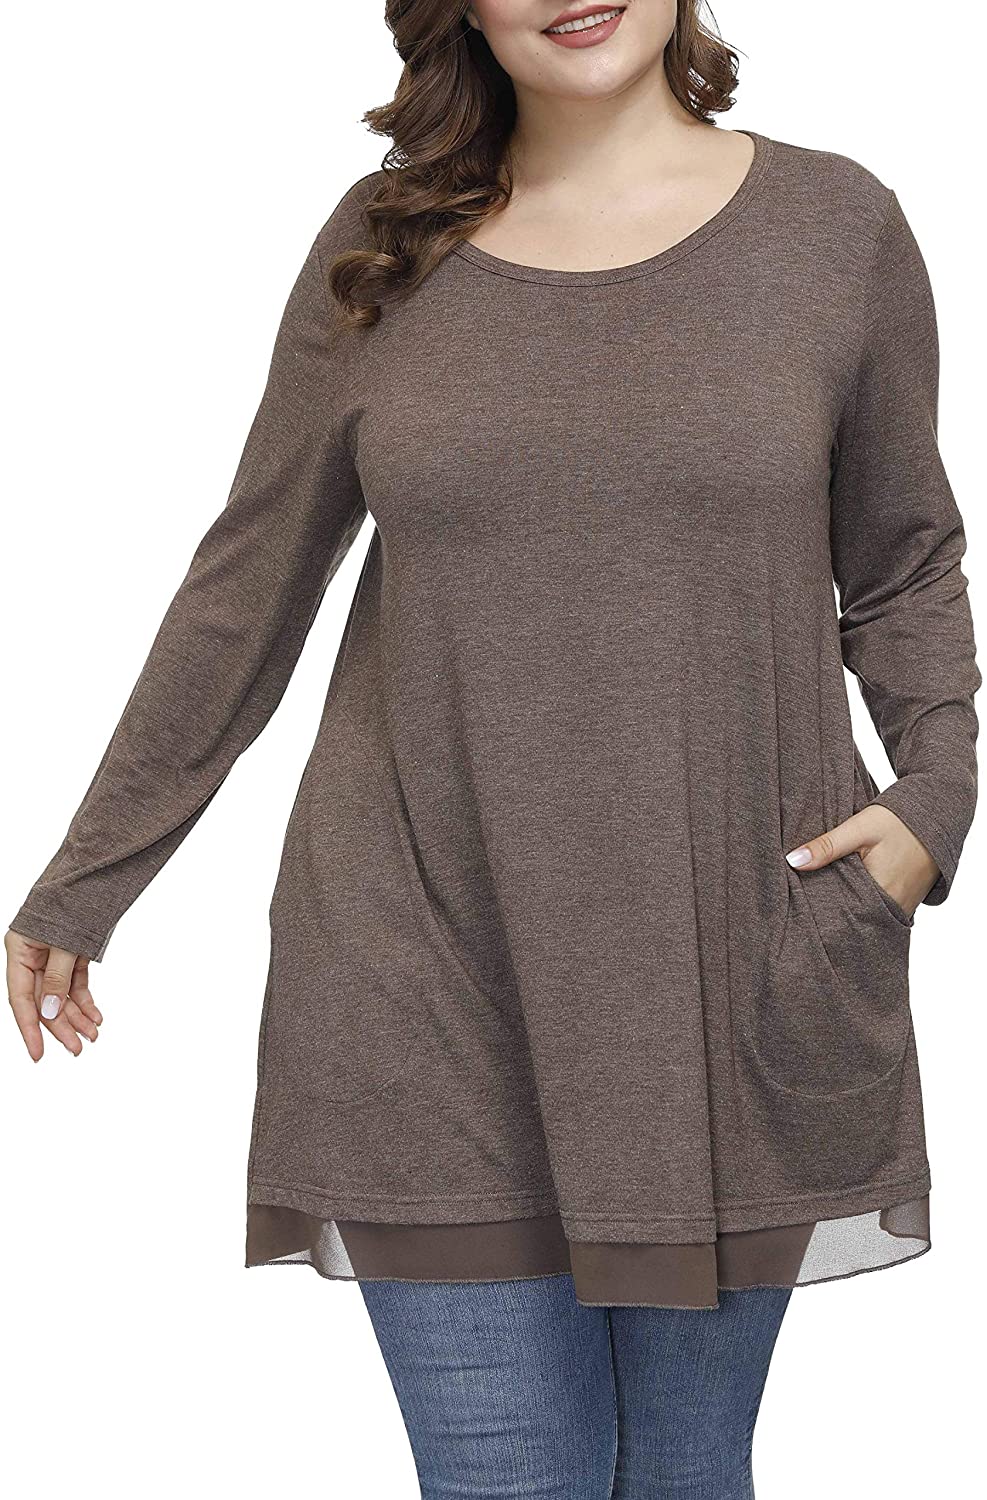 Shiaili Autumn Plus Size Tunic Tops for Women Hidden Pocket Flowy Long Shirts 